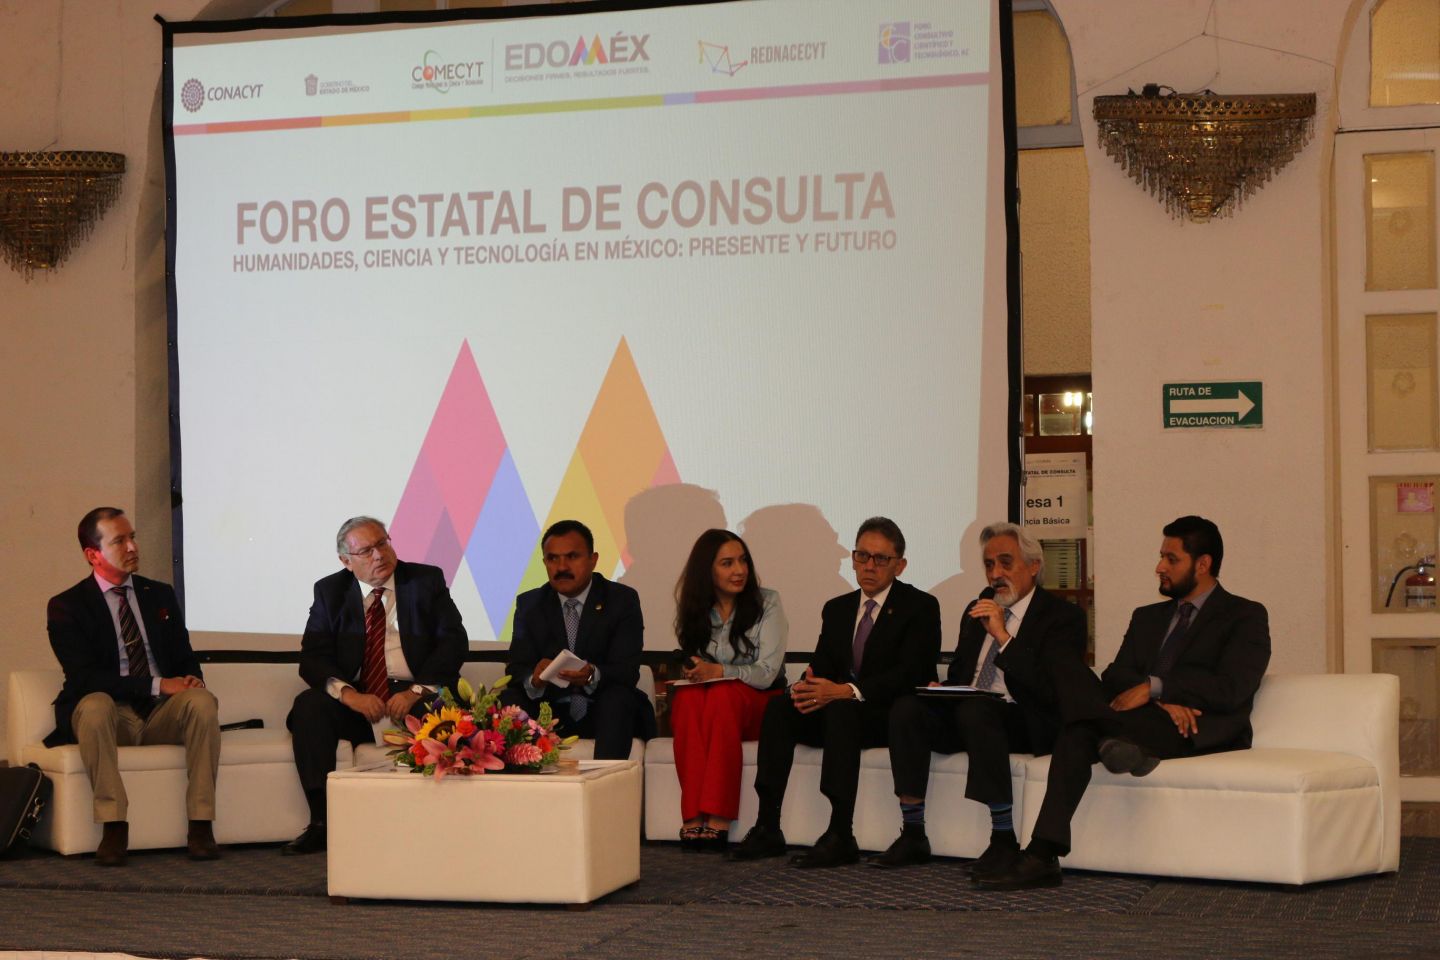 Realiza COMECYT foro estatal de consulta ’humanidades, ciencia y tecnología en México: presente y futuro’